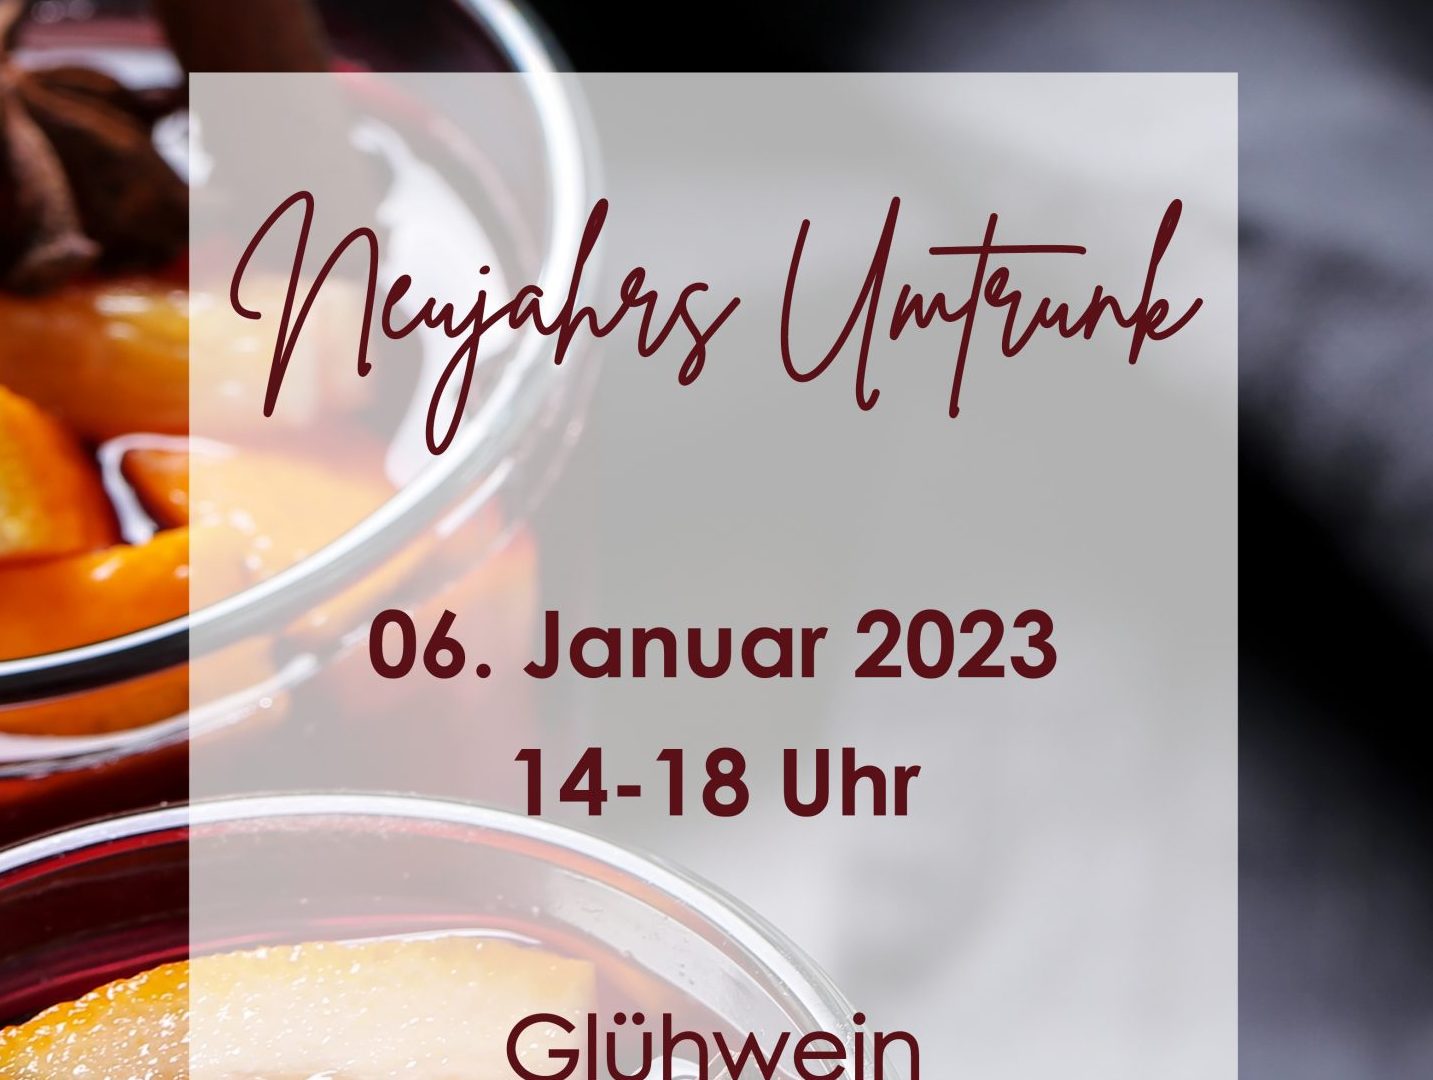 Gemeinsamer Start ins neue Jahr 2023: TVC Glühweinfest am 06. Januar